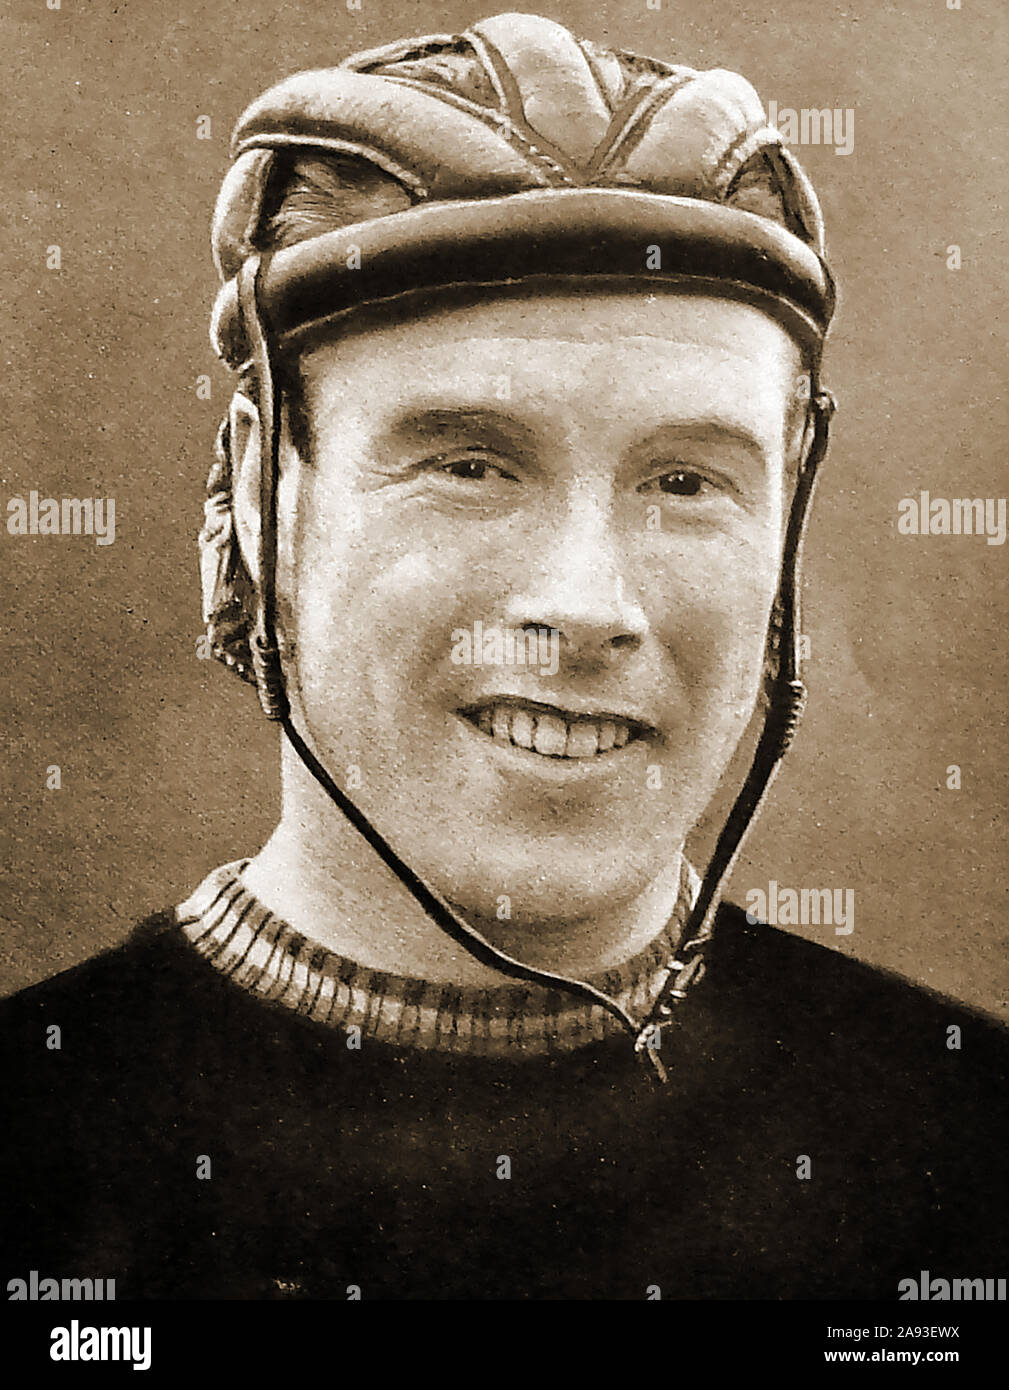 Un retrato de 1933 Reg Harris, ciclo mundial Esprintar Campeón 1949 & 1950, (Reginald Hargreaves Harris OBE ( 1920 - 1992). También compitió en los Juegos Olímpicos de 1948 Tandem sprint (con Alan Bannister) y fue Deportista del Año 1950 Foto de stock